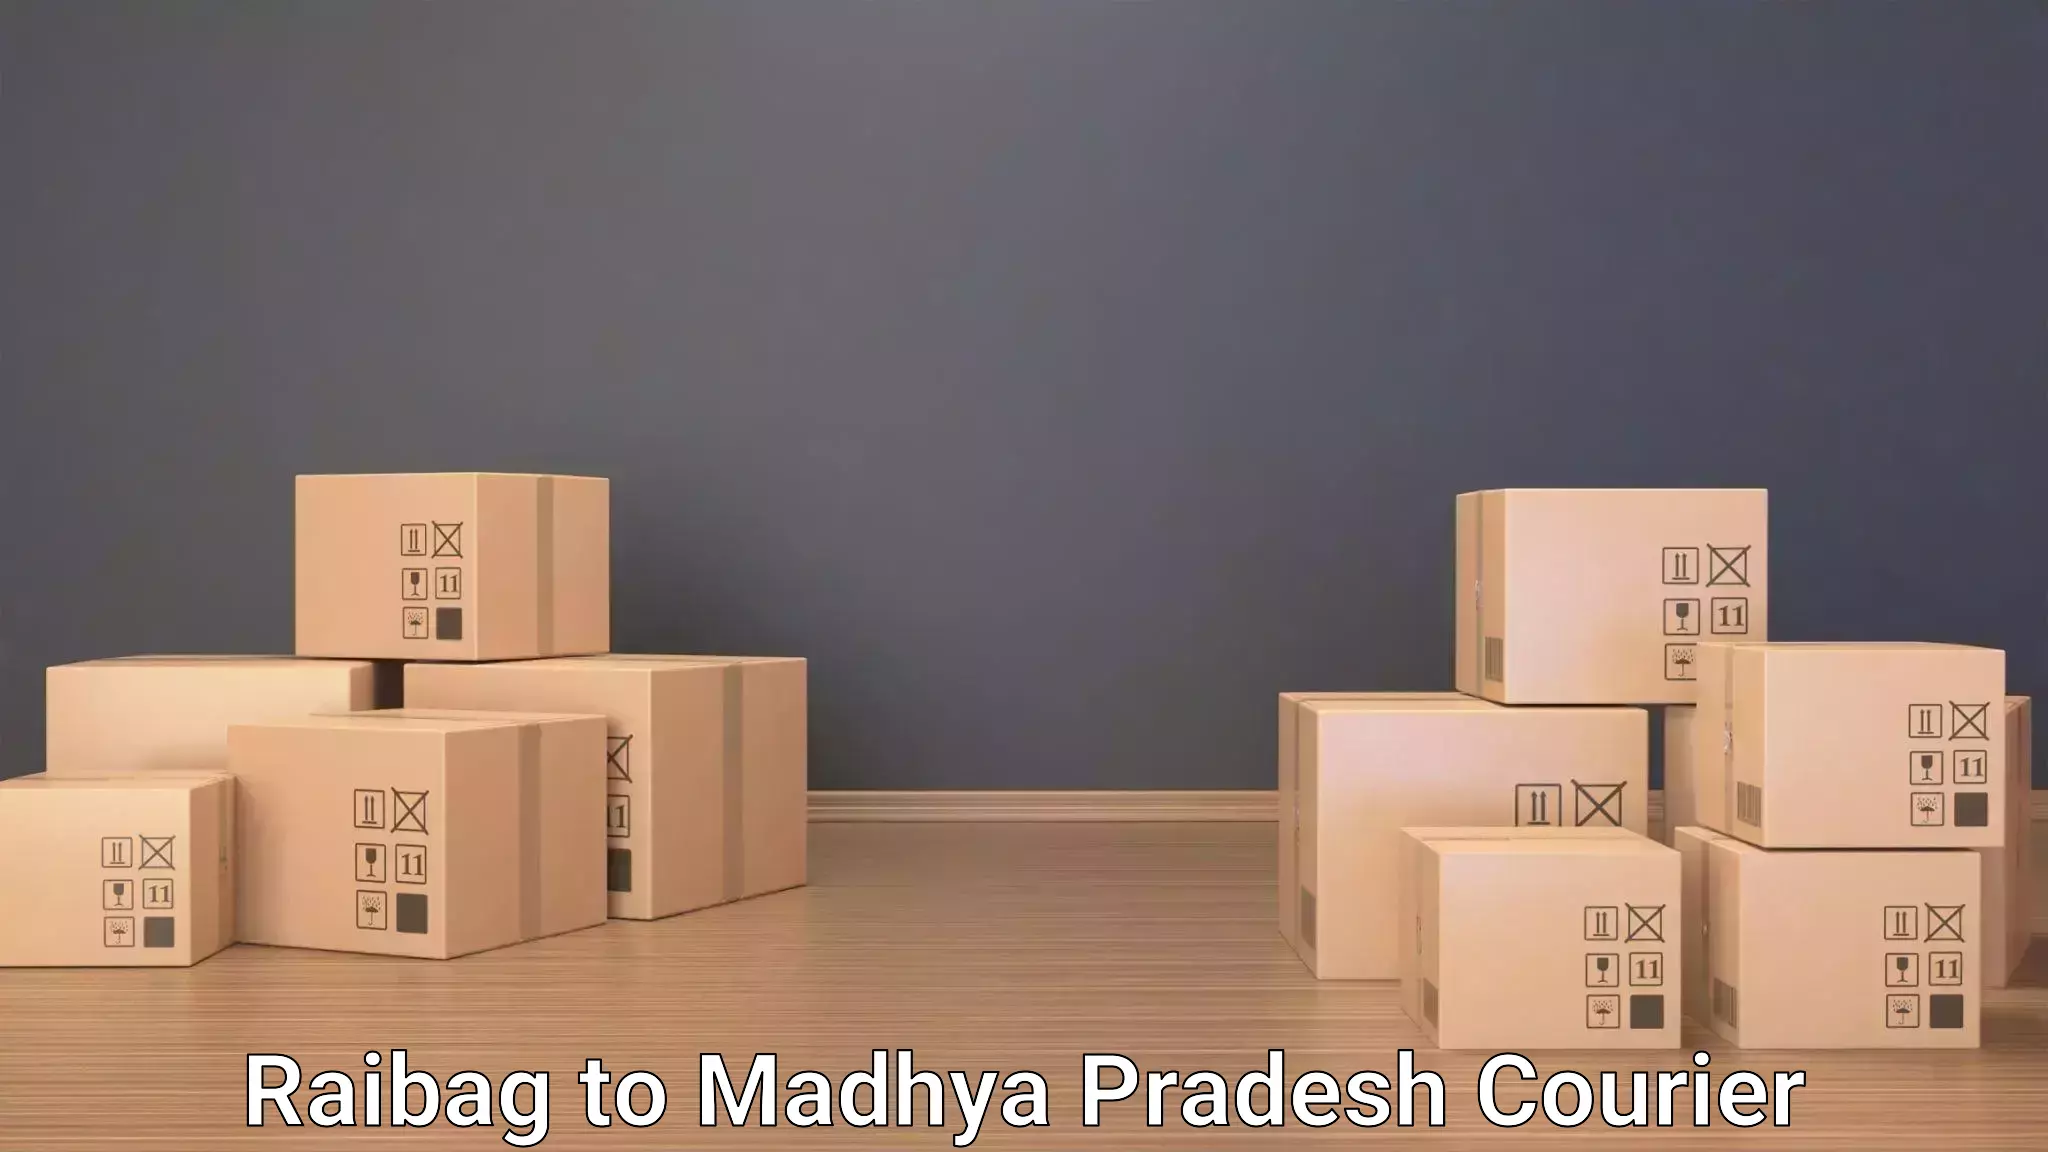 Luggage transport deals Raibag to Gwalior